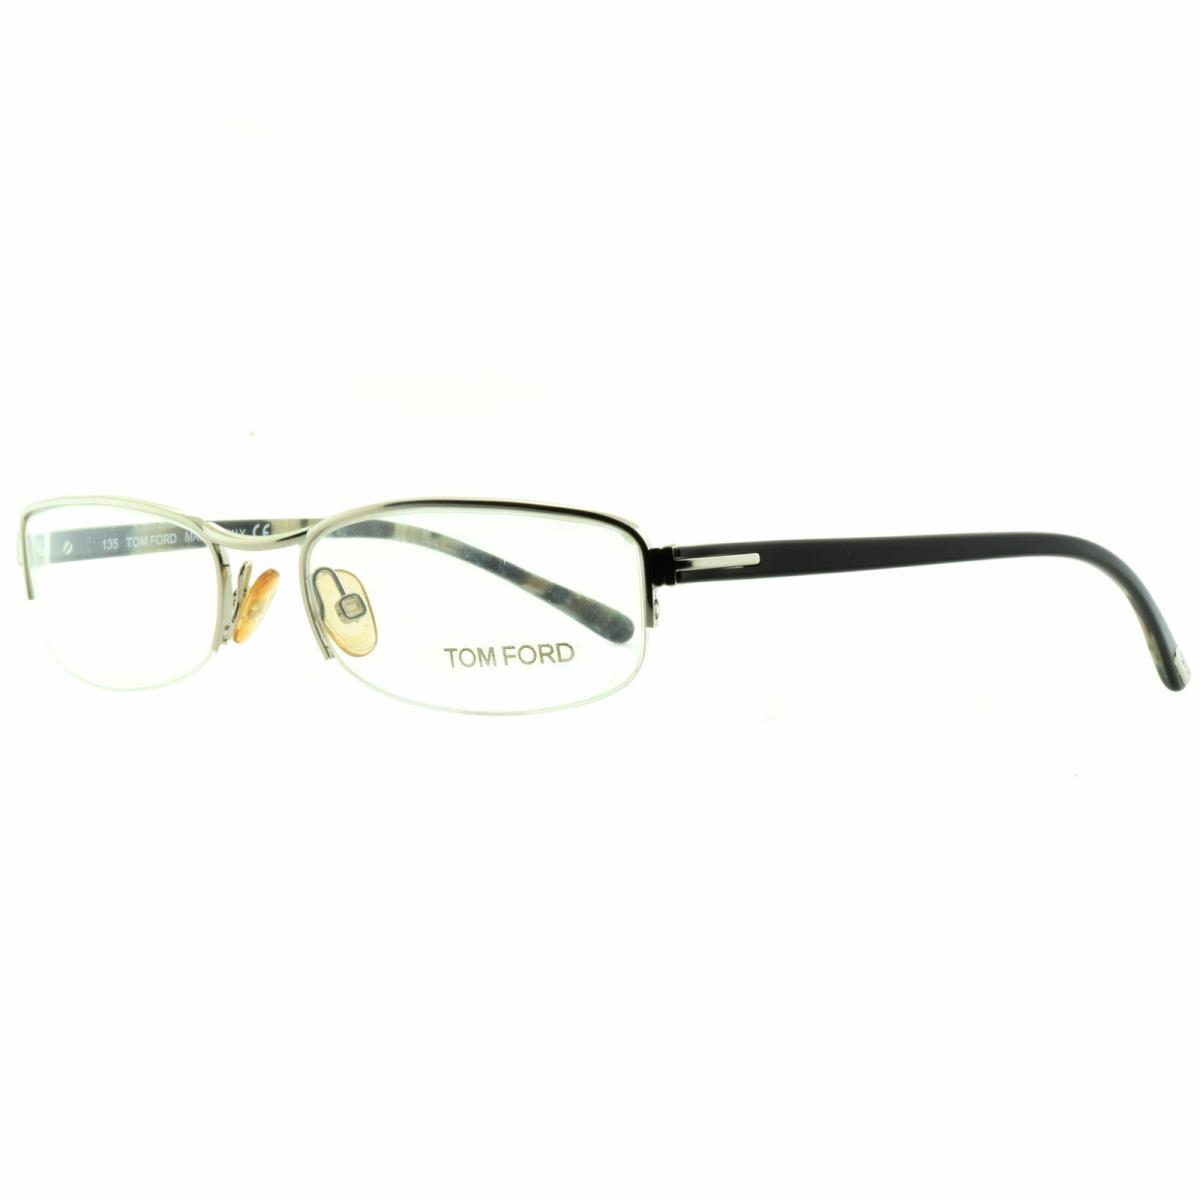 Tom Ford FT5023 753 Silver / Black Rectangular Optical Frames Eyeglasses